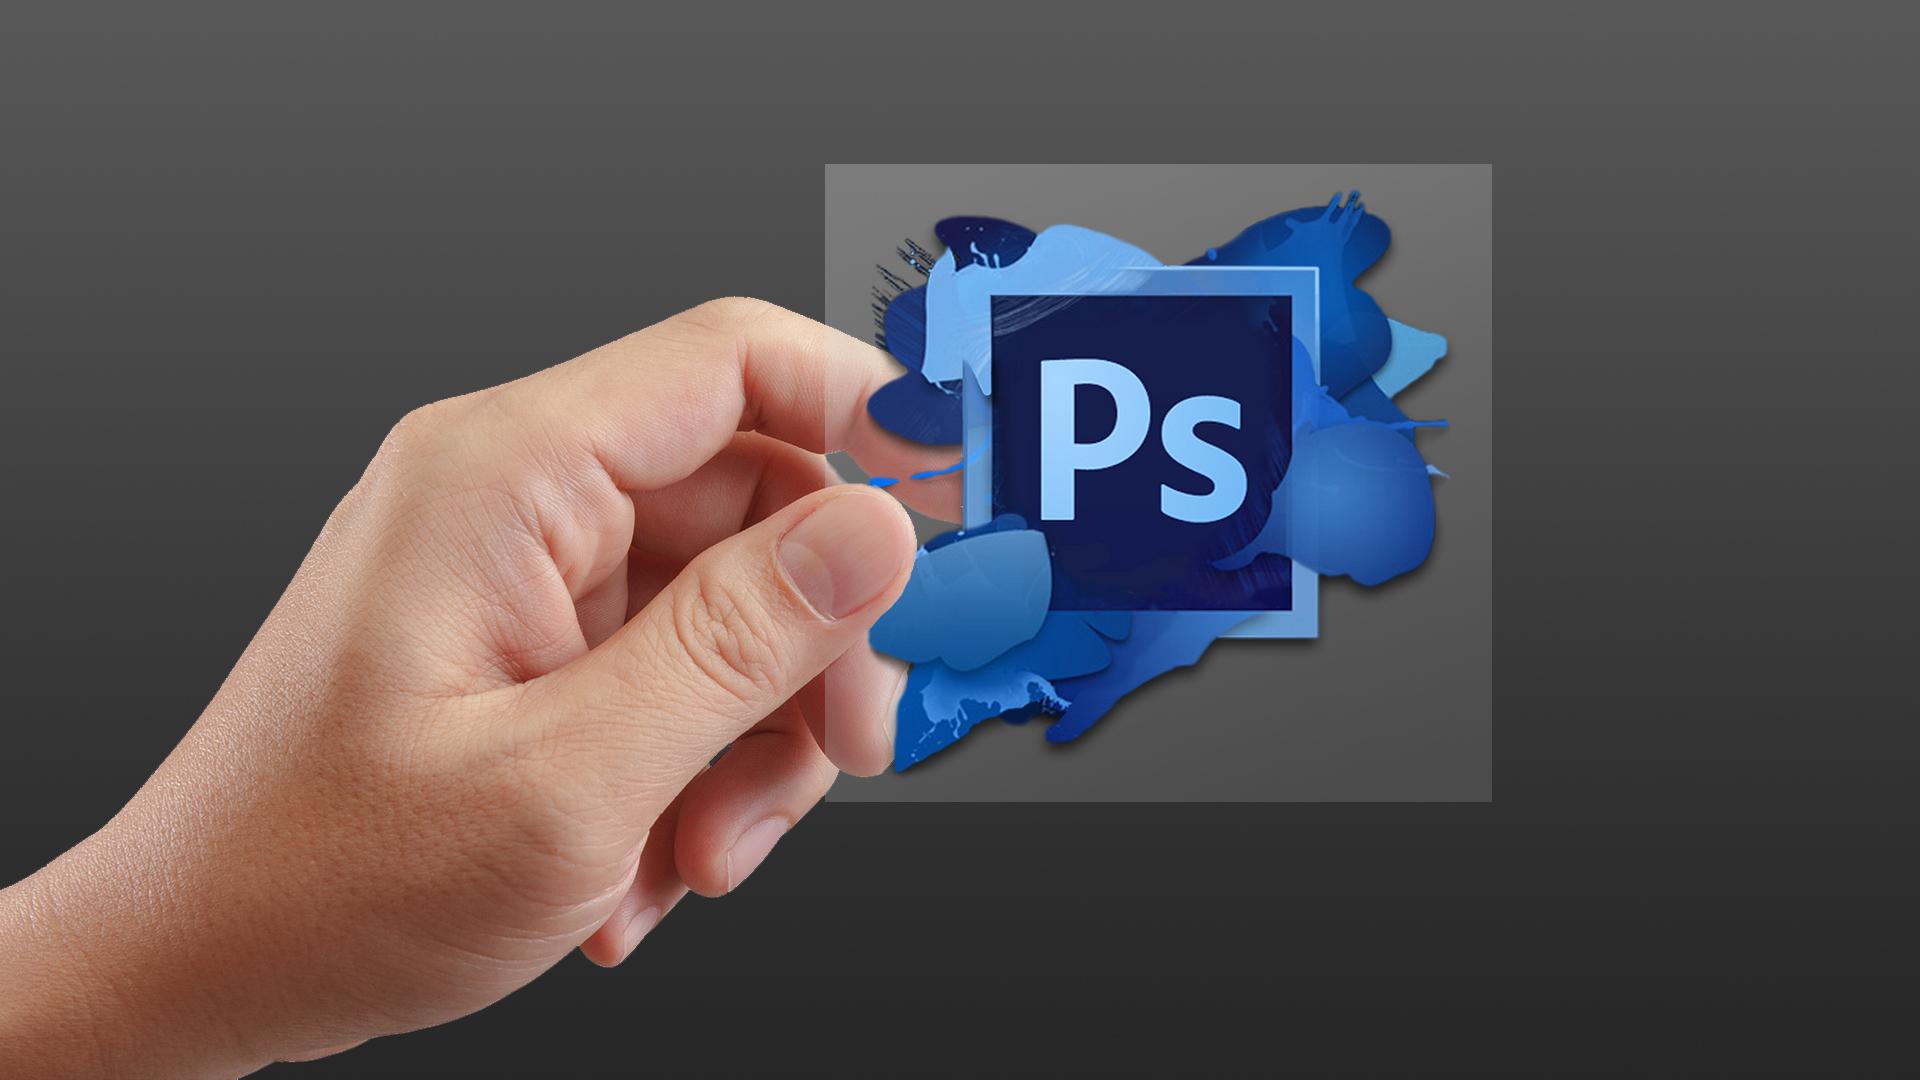 PS怎么保存透明背景图片-Adobe Photoshop保存透明背景的图片的方法教程 - 极光下载站